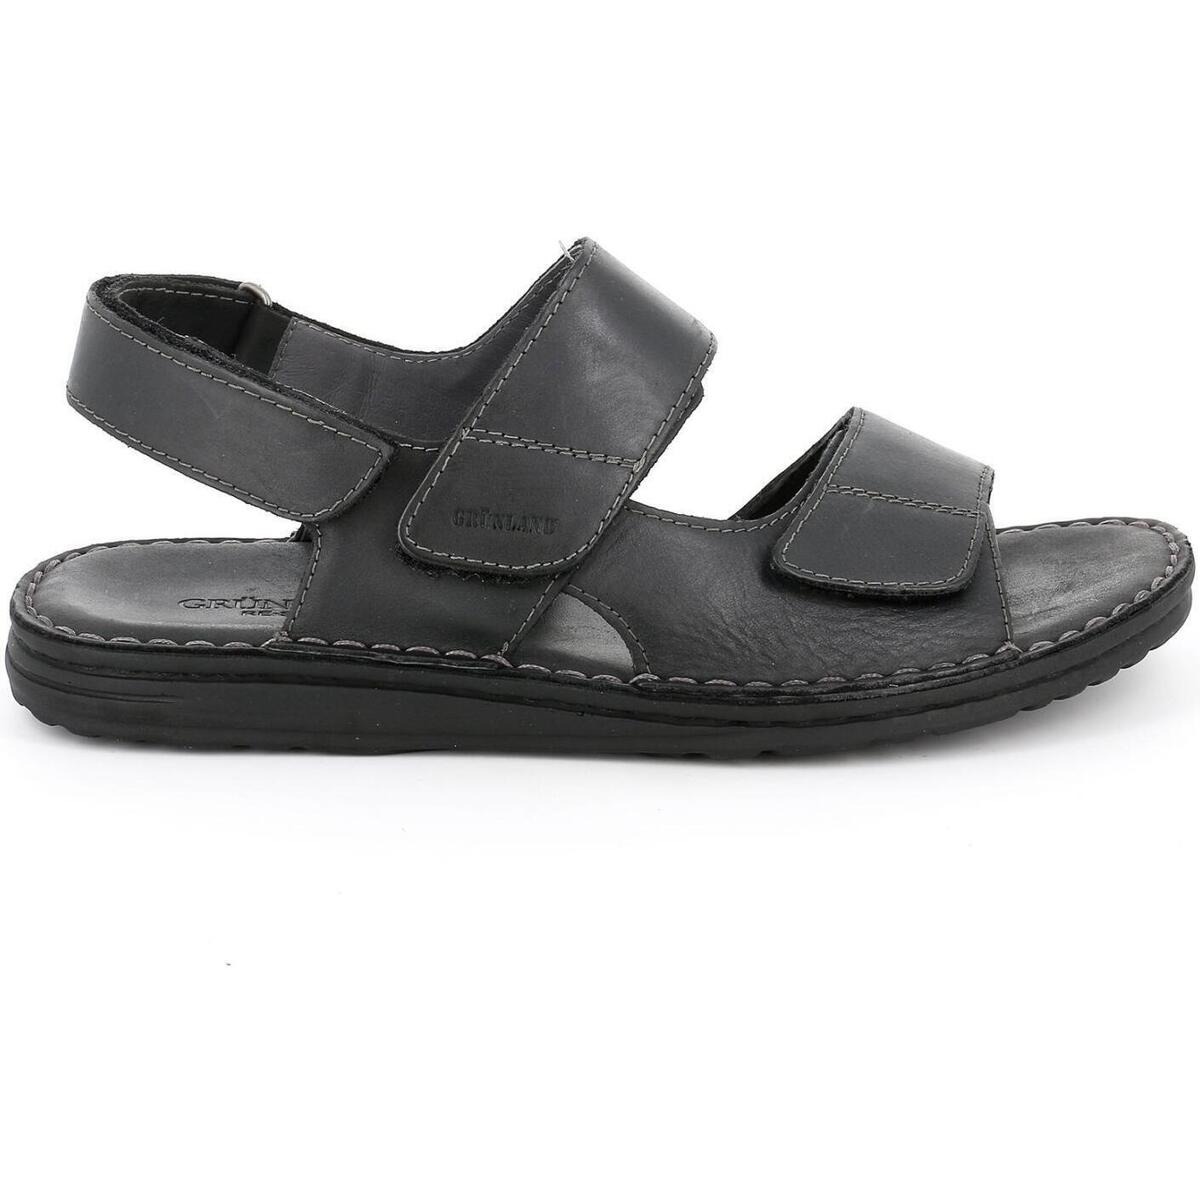 Spartoo Gents Black Sandals from Grunland GOOFASH